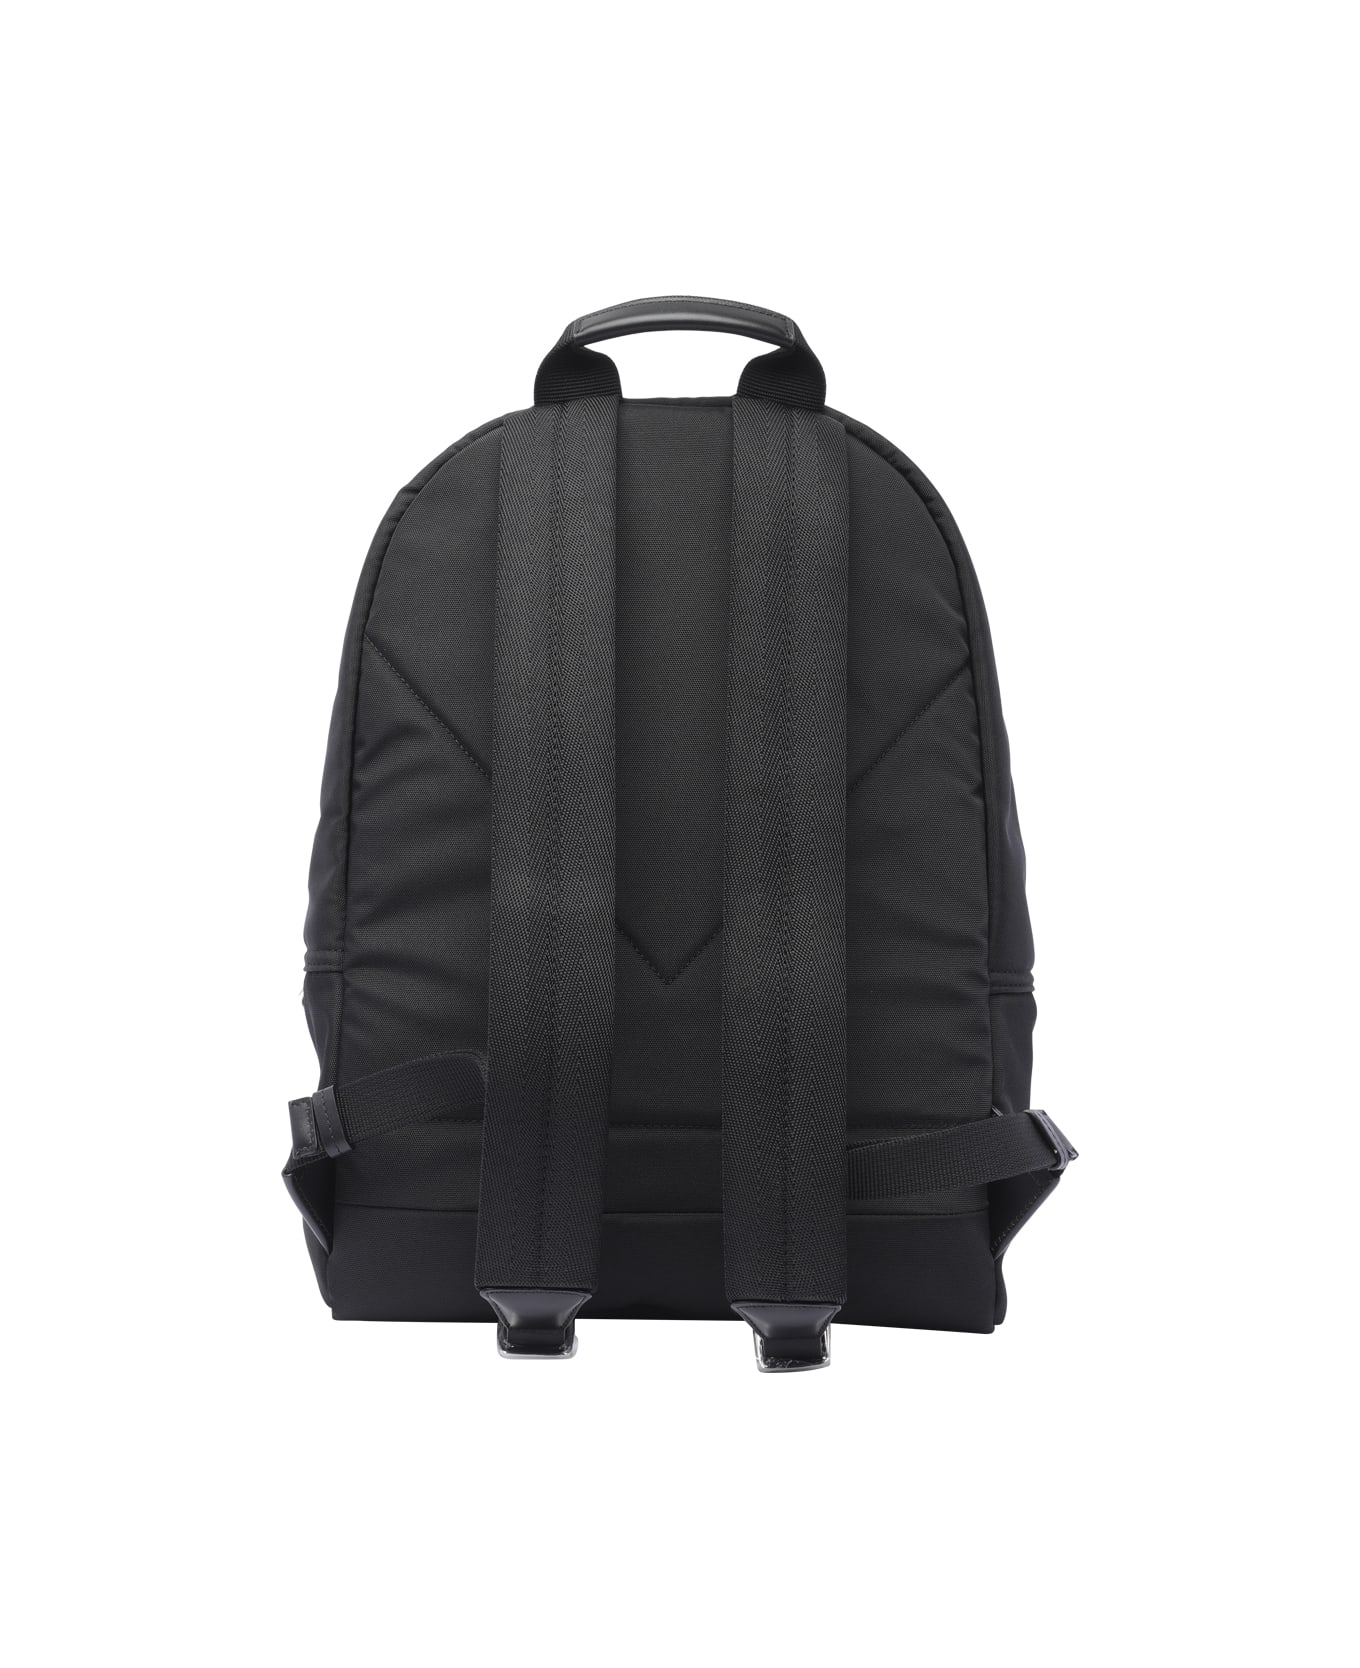 Kenzo Varsity Elephant Backpack - Black